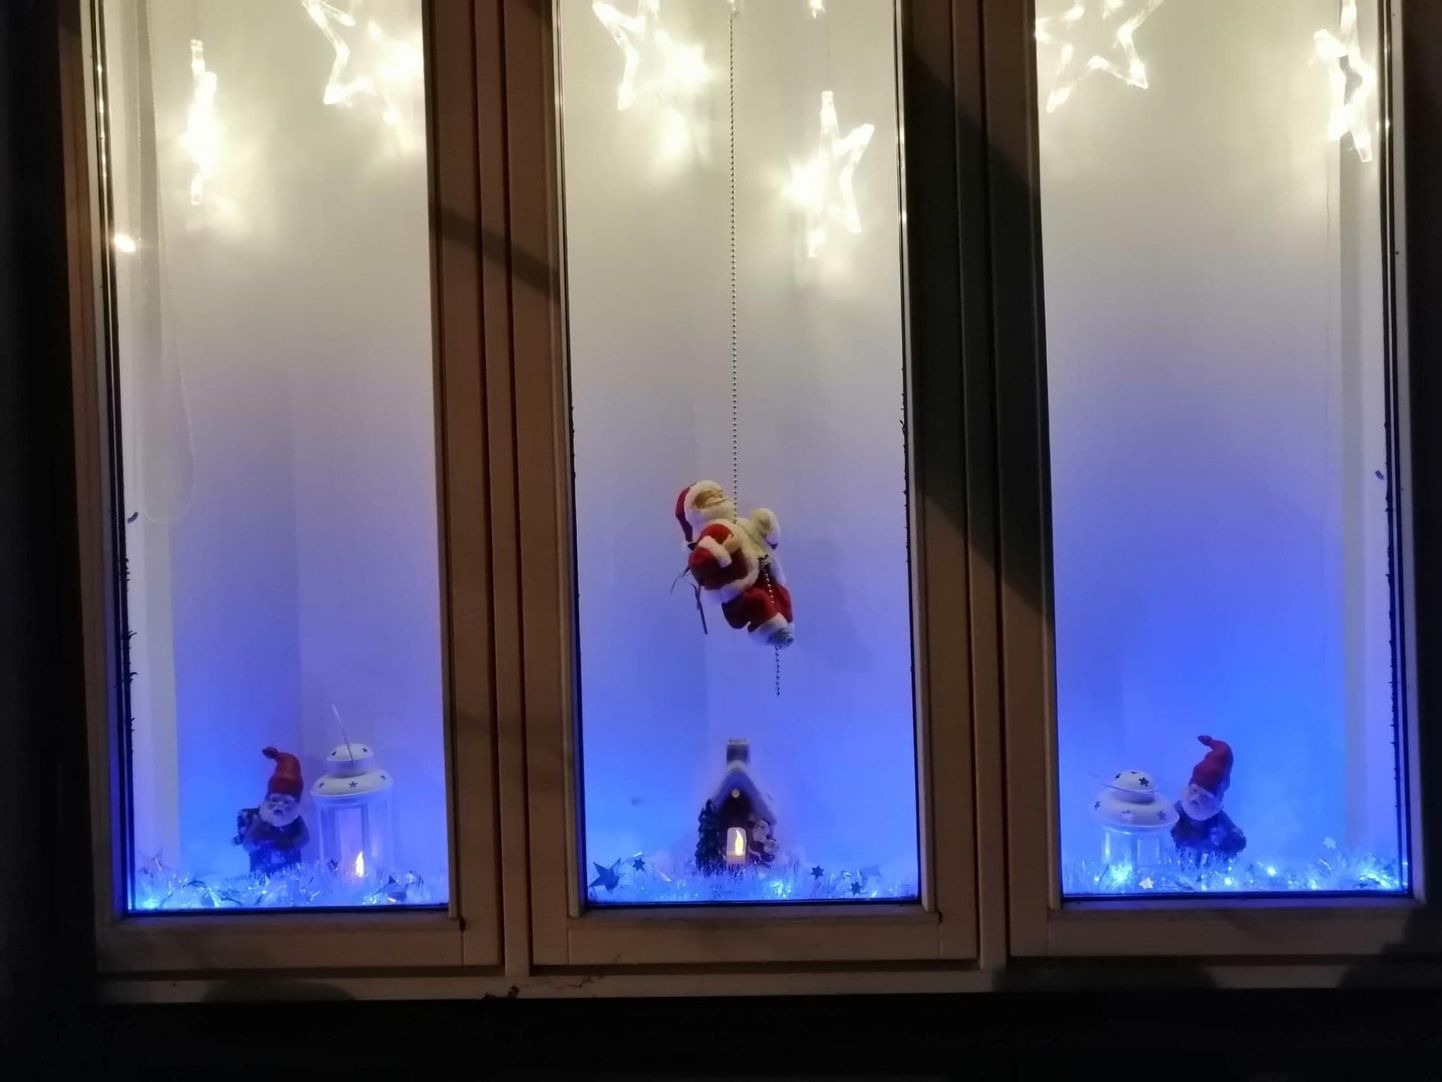 Riia maantee 89 korterelamu pere on suure aknapinna oskuslikult ära kasutanud ja loonud sinna vahva muinasjutulise jõululoo ühes päkapikkude, jõuluvana ja tähistaevaga.